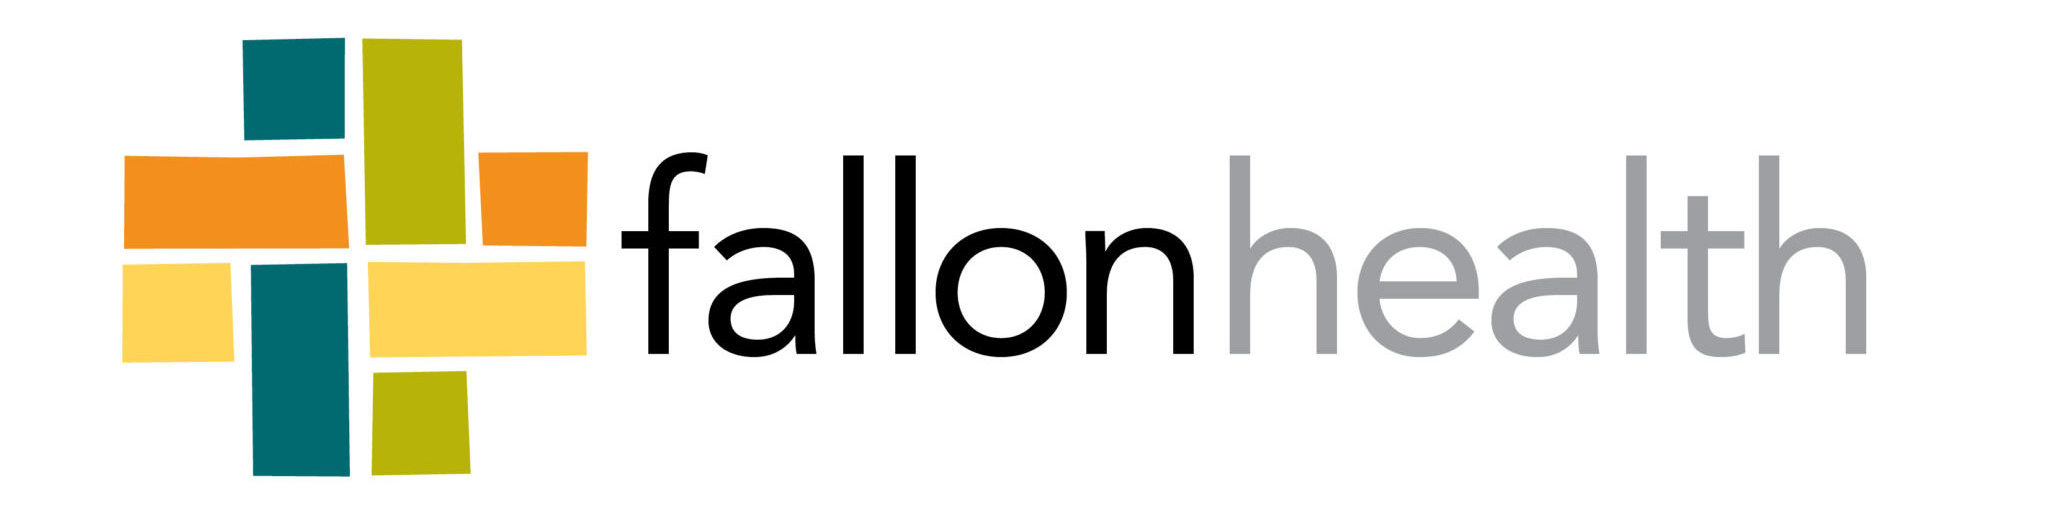 Fallon Health Logo 4c